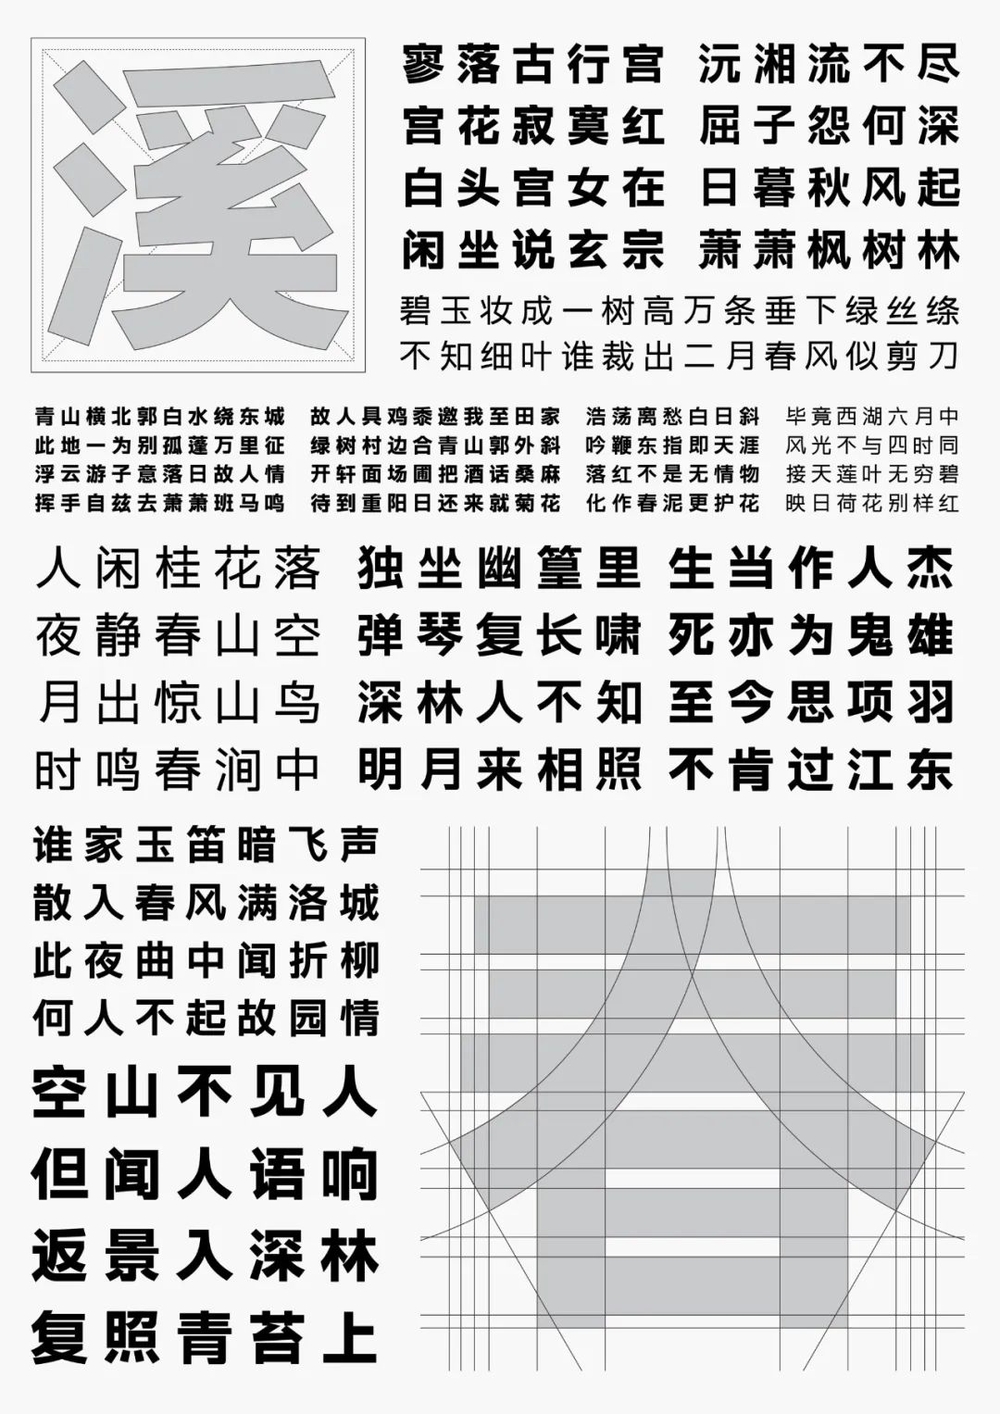 字体圈伟君黑｜沉稳中正的免费可商用中文黑体字体